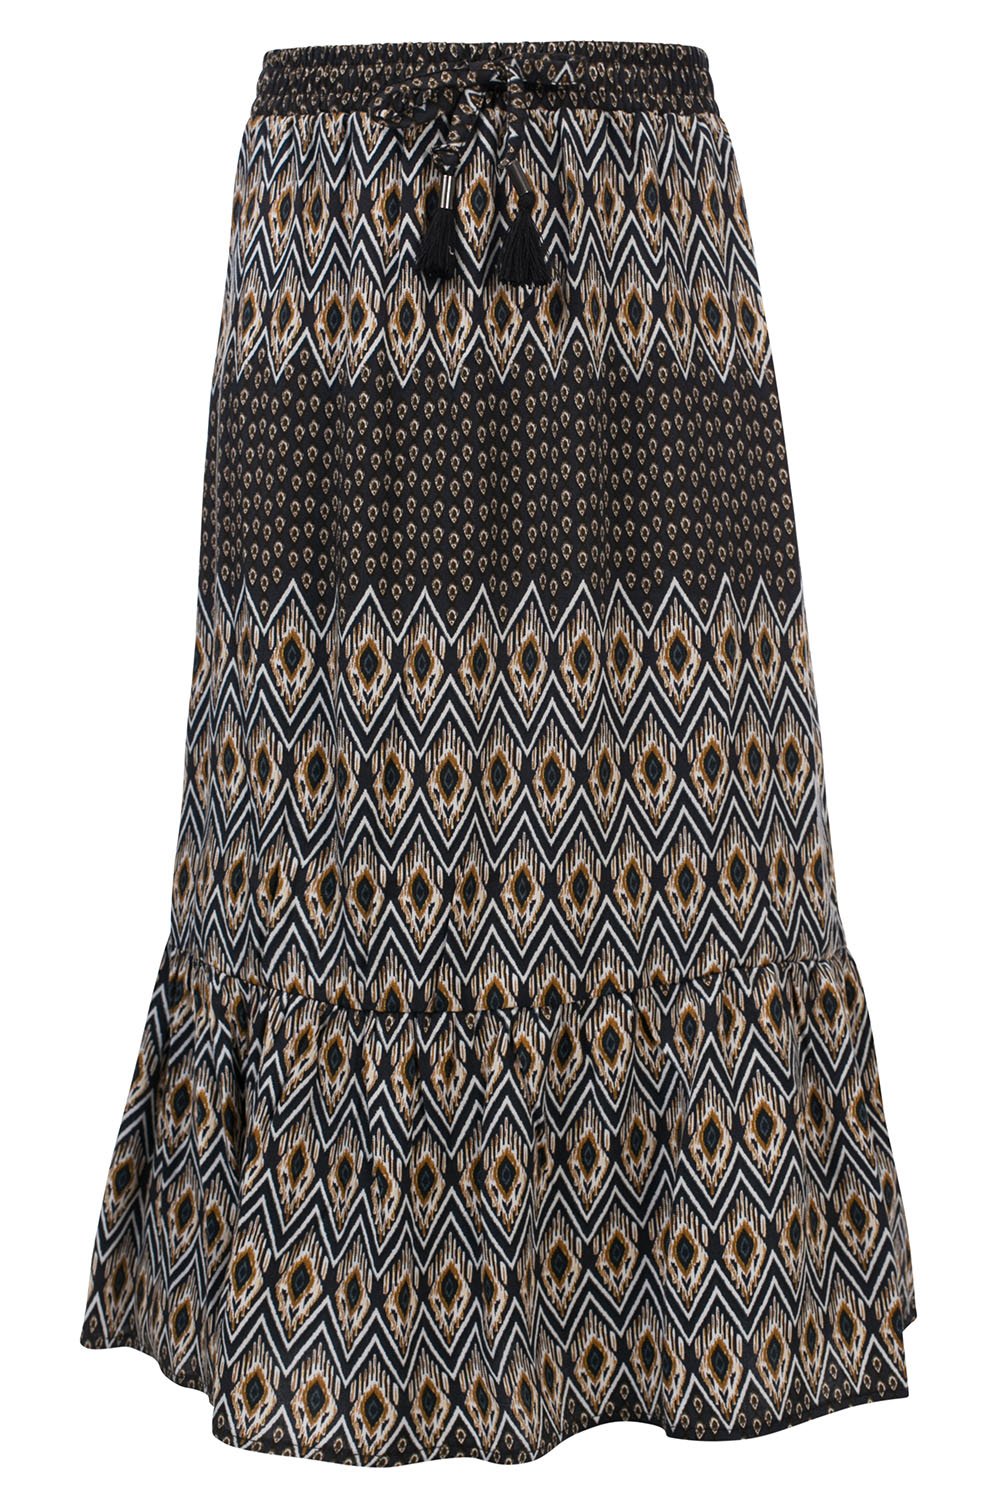 Meisjes 10Sixteen Native printed Long skirt van LOOXS 10sixteen in de kleur Native AO in maat 176.